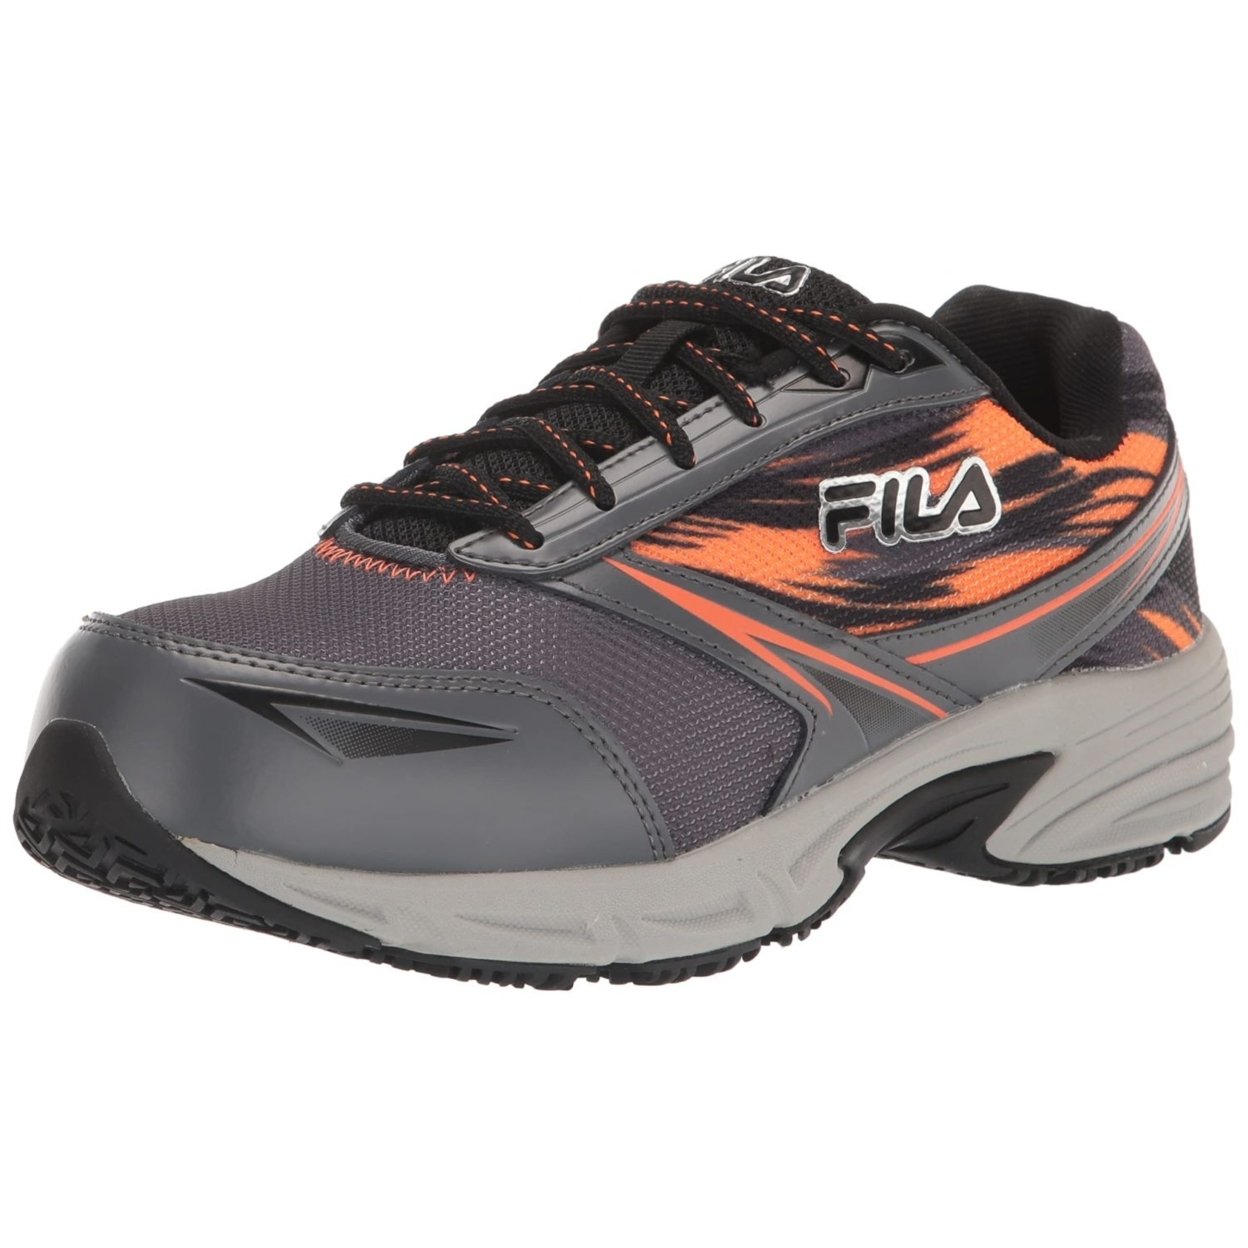 Fila Menâs Memory Meiera 2 Slip Resistant And Composite Toe Work Shoe CSRK/BLK/VORN - Castlerock/Black/Vibrant Orange, 10.5